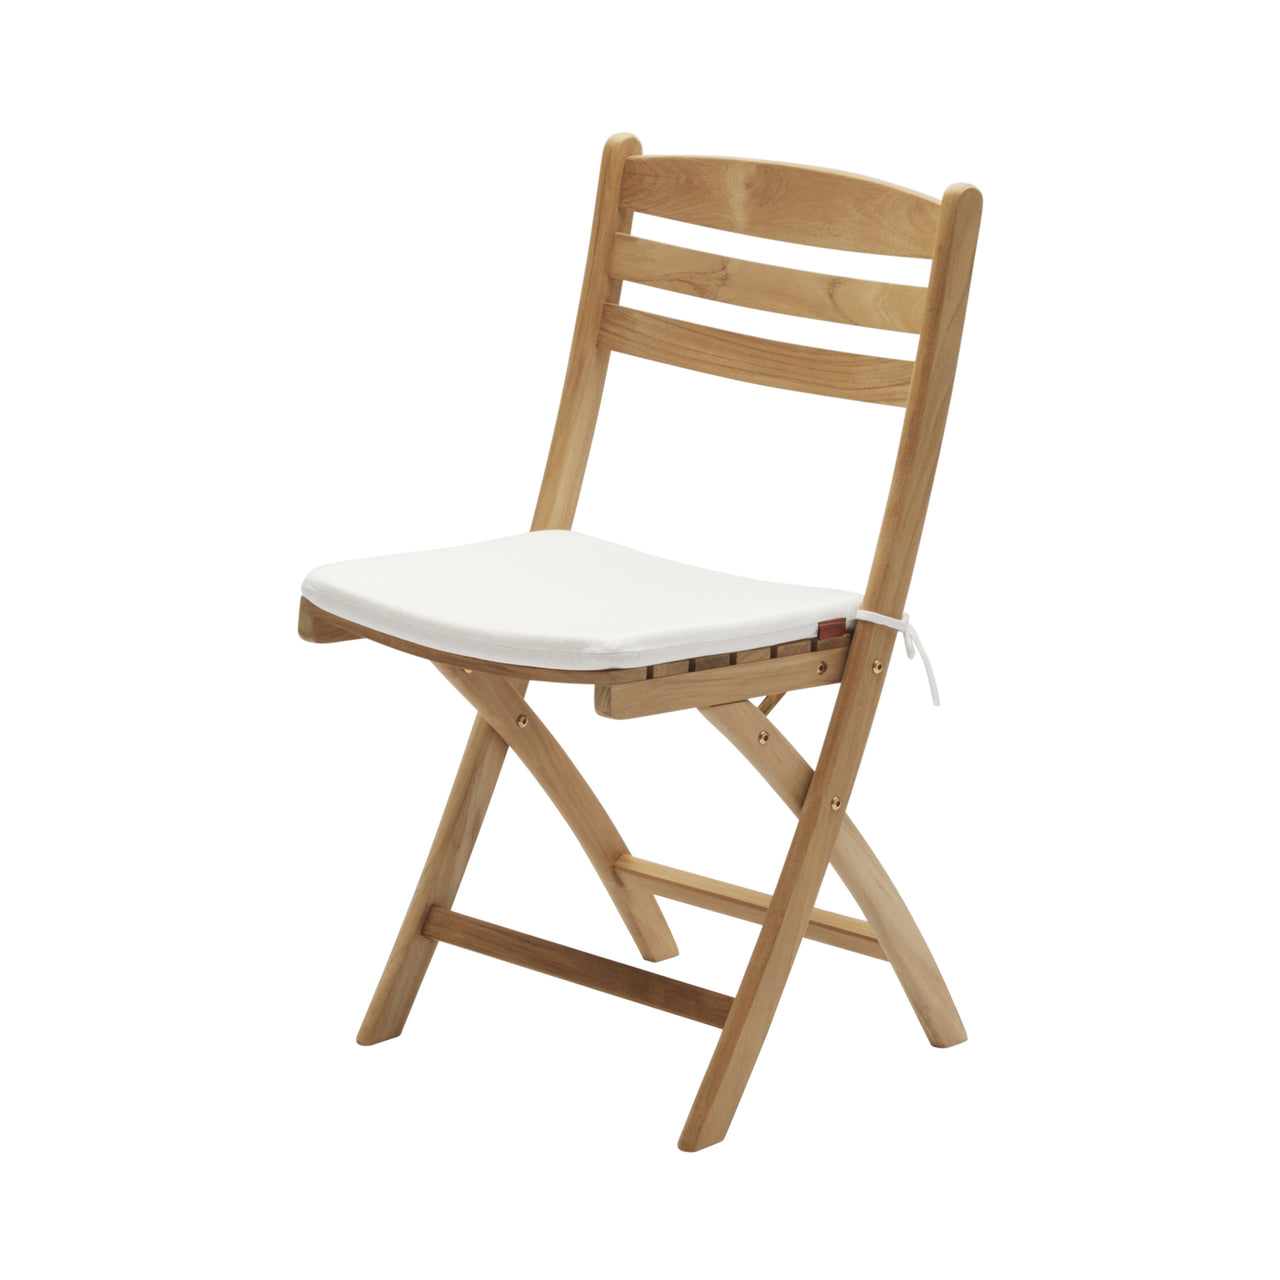 Selandia Chair: With White Cushion